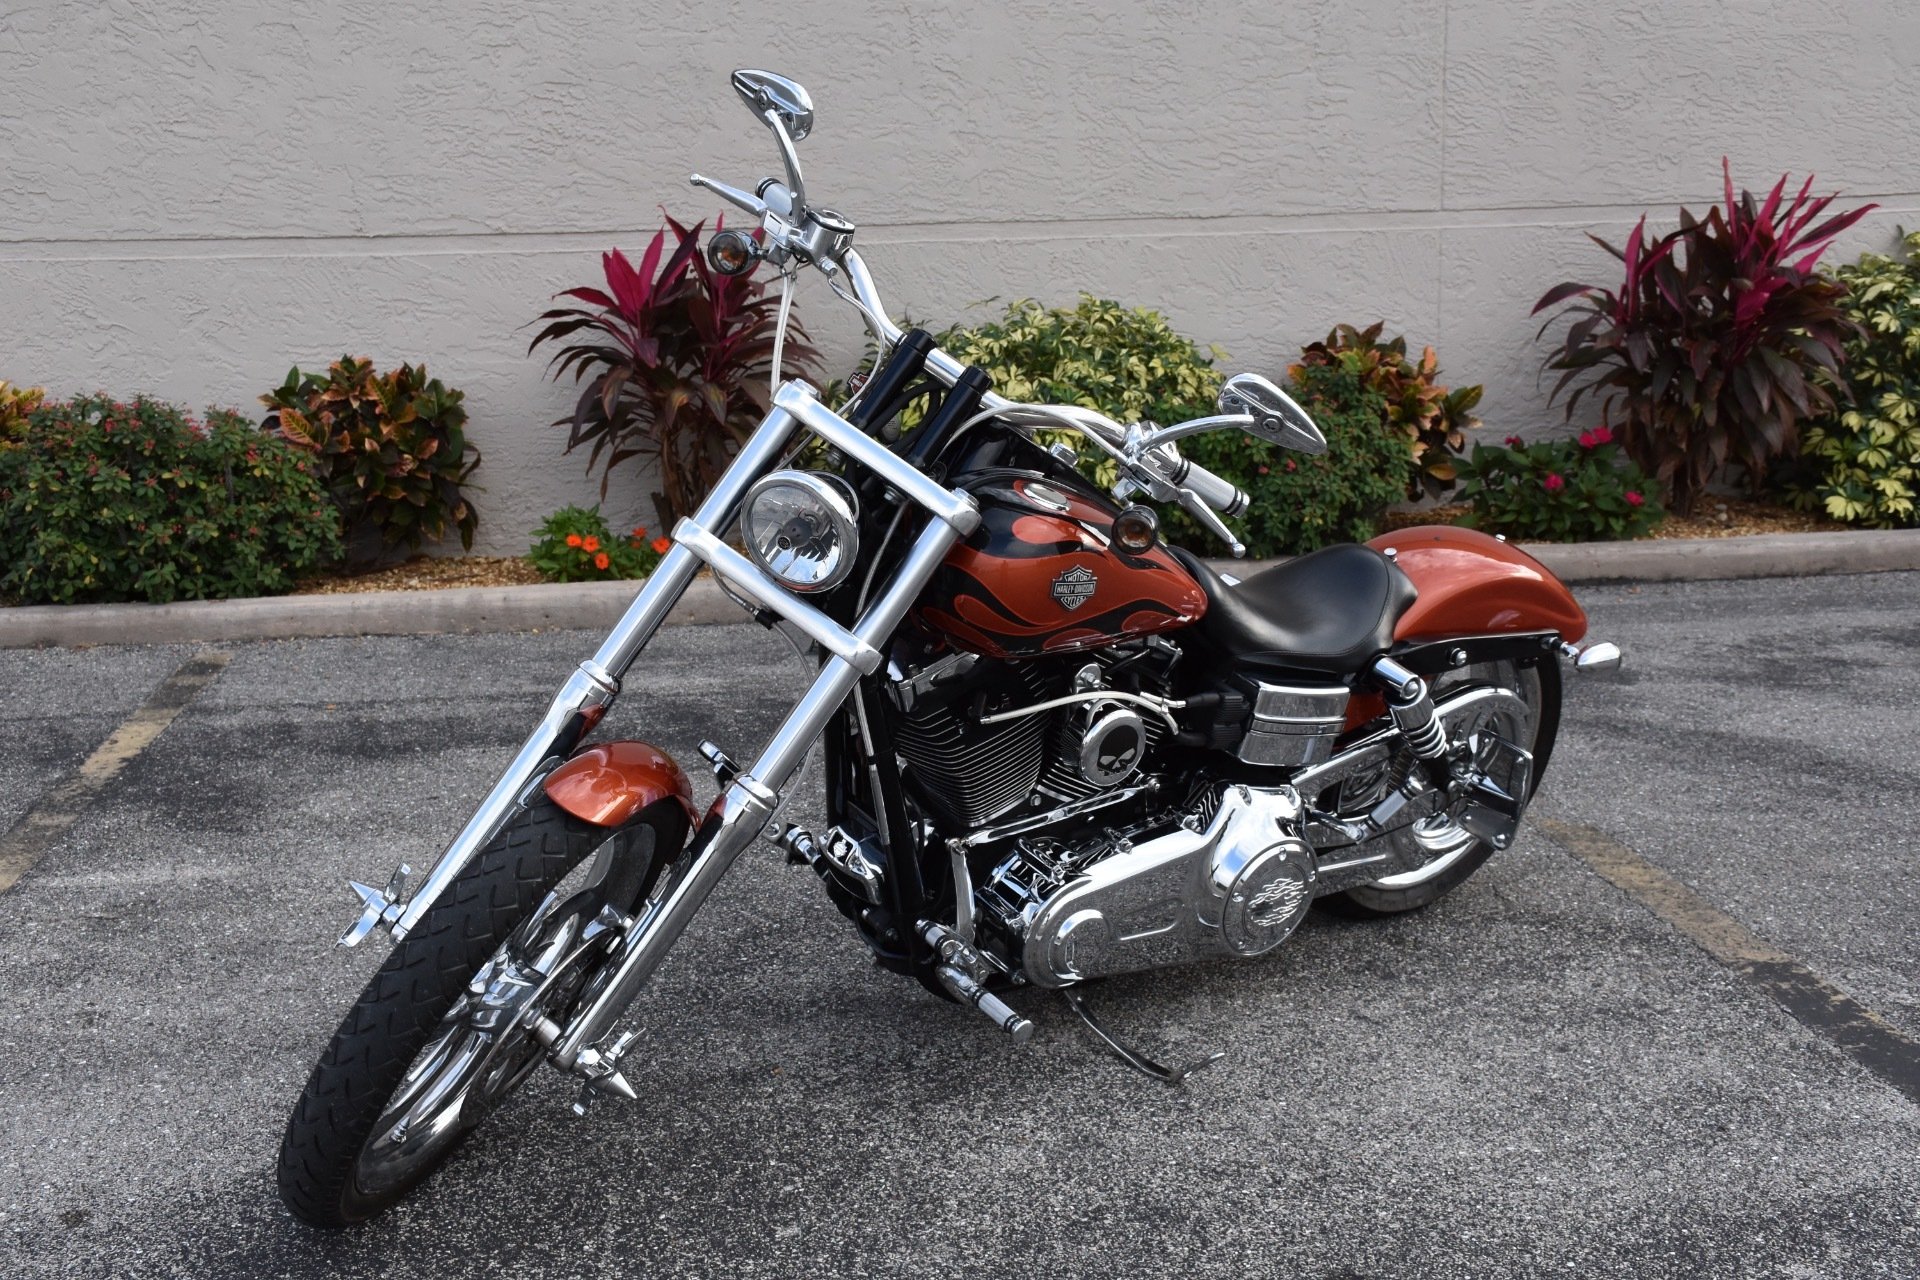 2011 Harley Davidson Dyna Wide Glide For Sale Off 74 Medpharmres Com